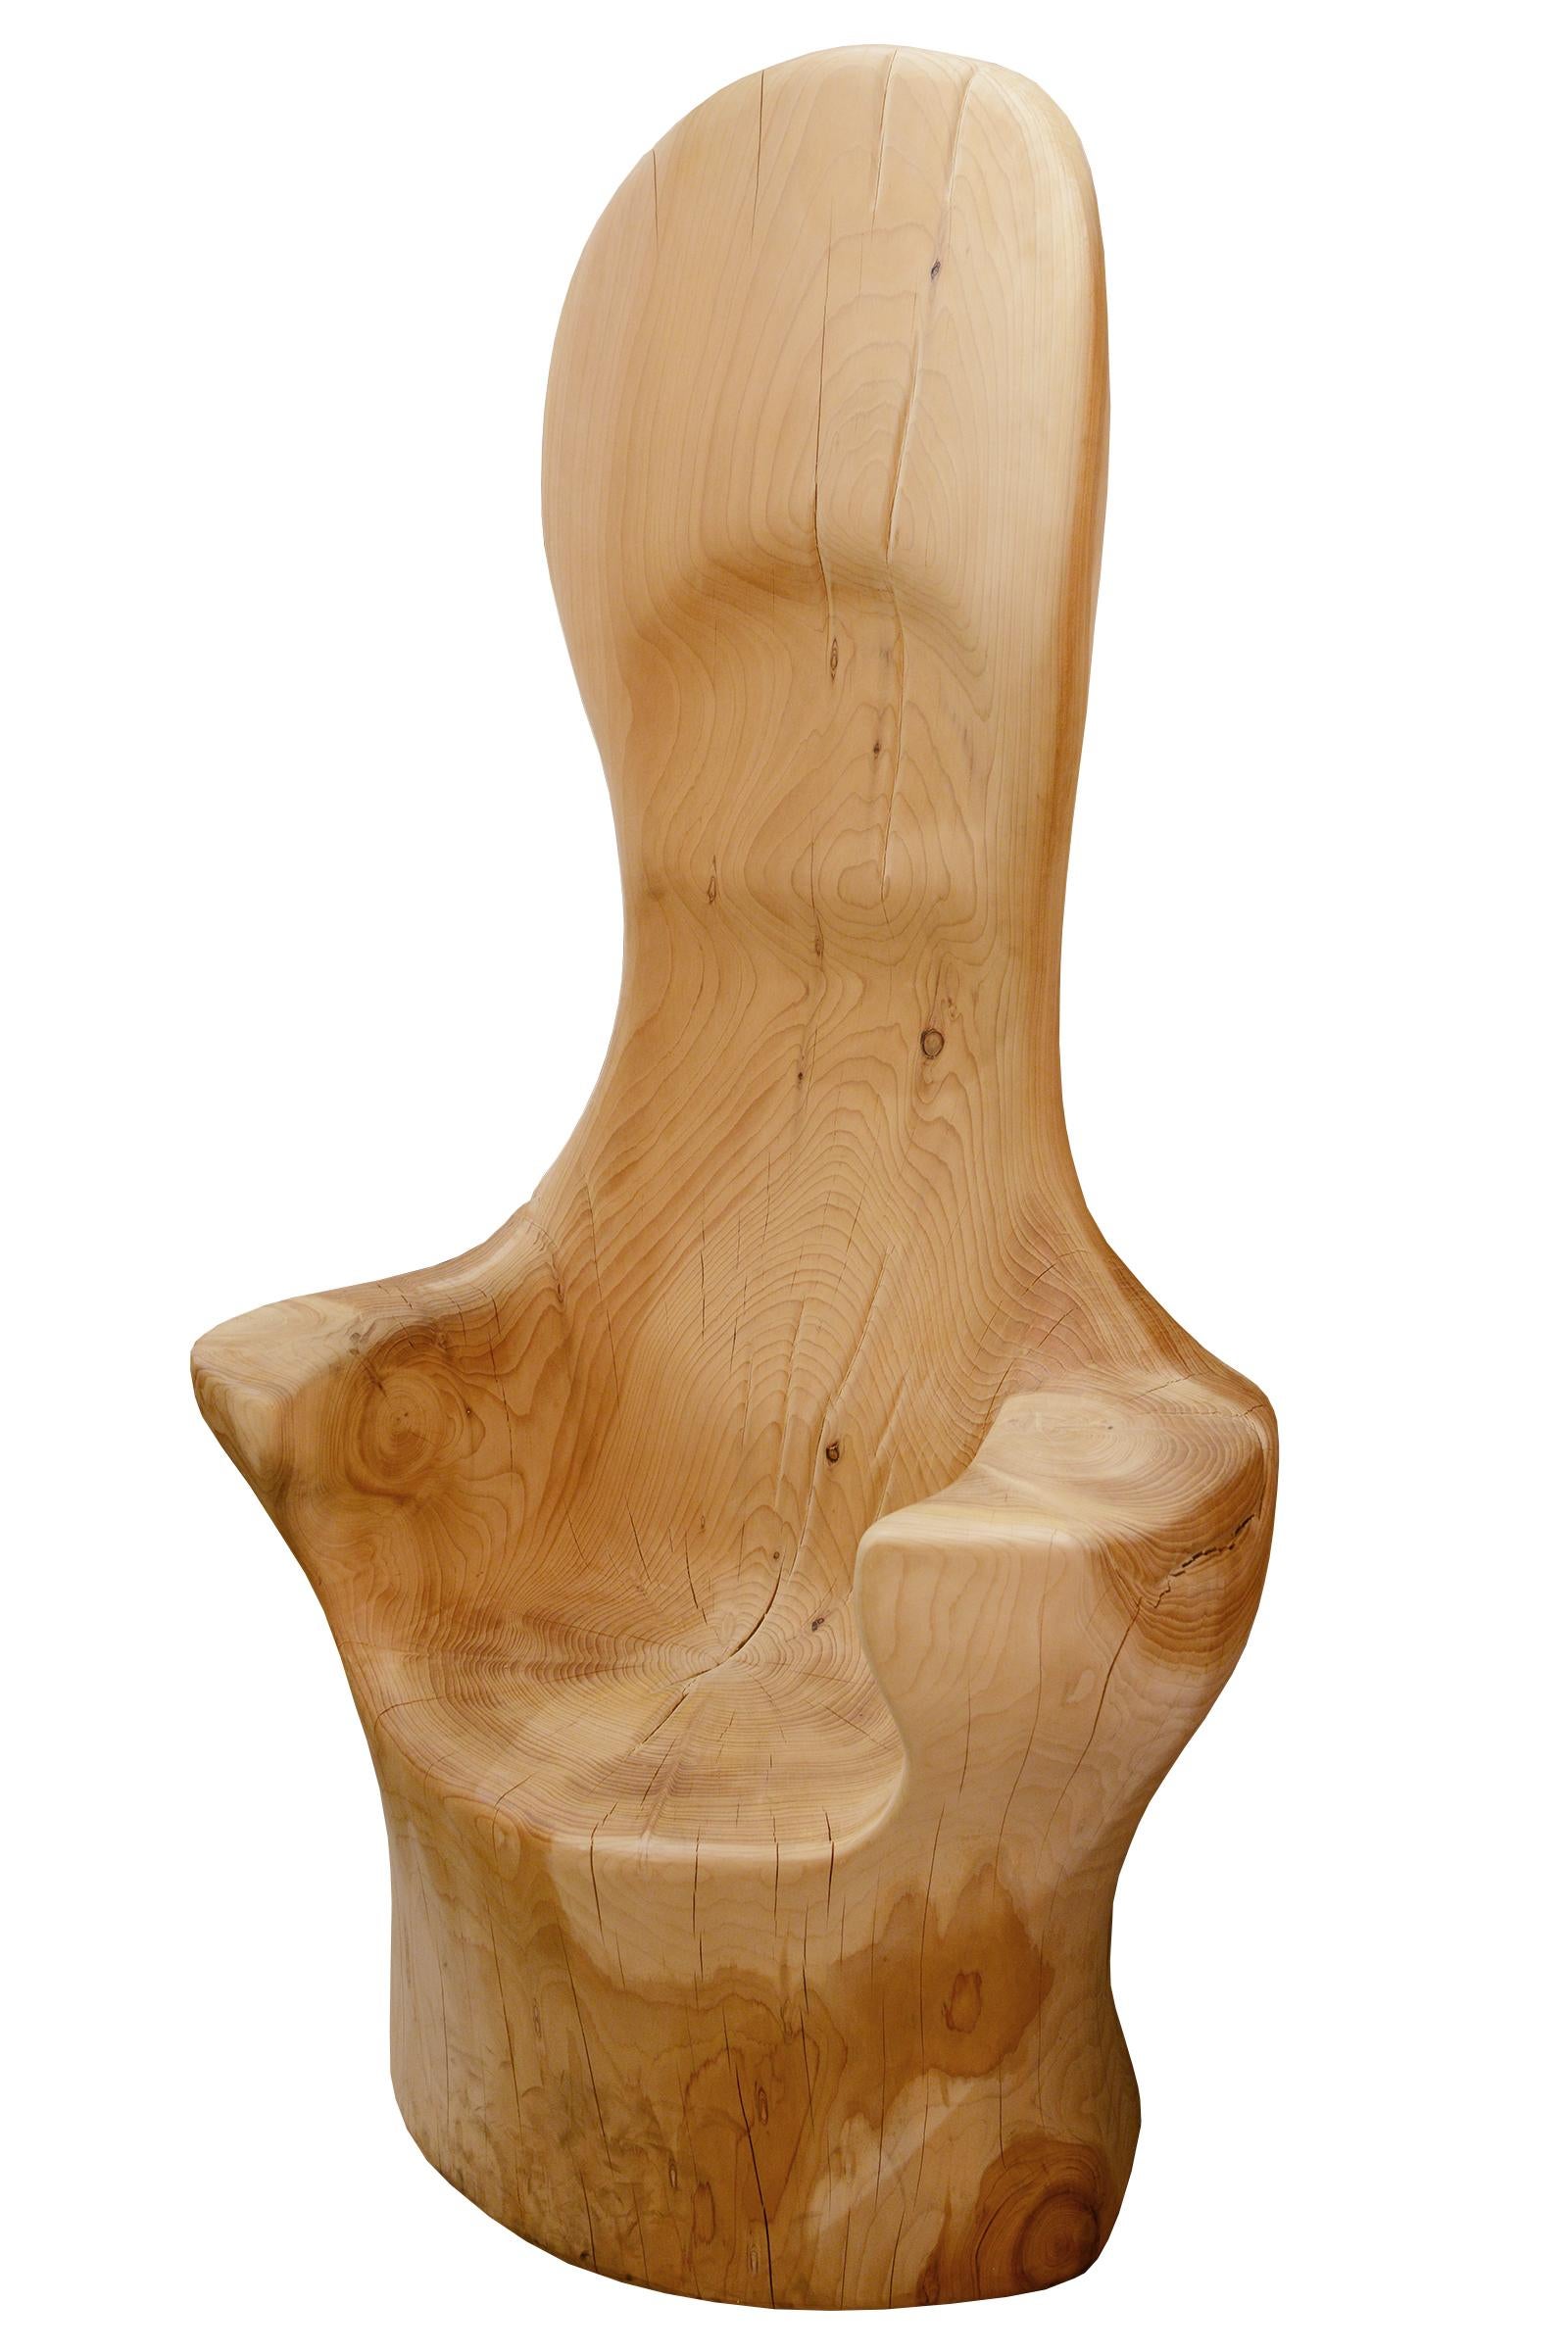 Throne Cedar high fabriqué avec du bois de cèdre brut naturel,
sculpté à la main à partir d'un tronc de cèdre de la mort, main-
polie et traitée naturellement pour que le cèdre soit
l'odeur de l'essence. Pièce exceptionnelle et unique.
Fabriqué